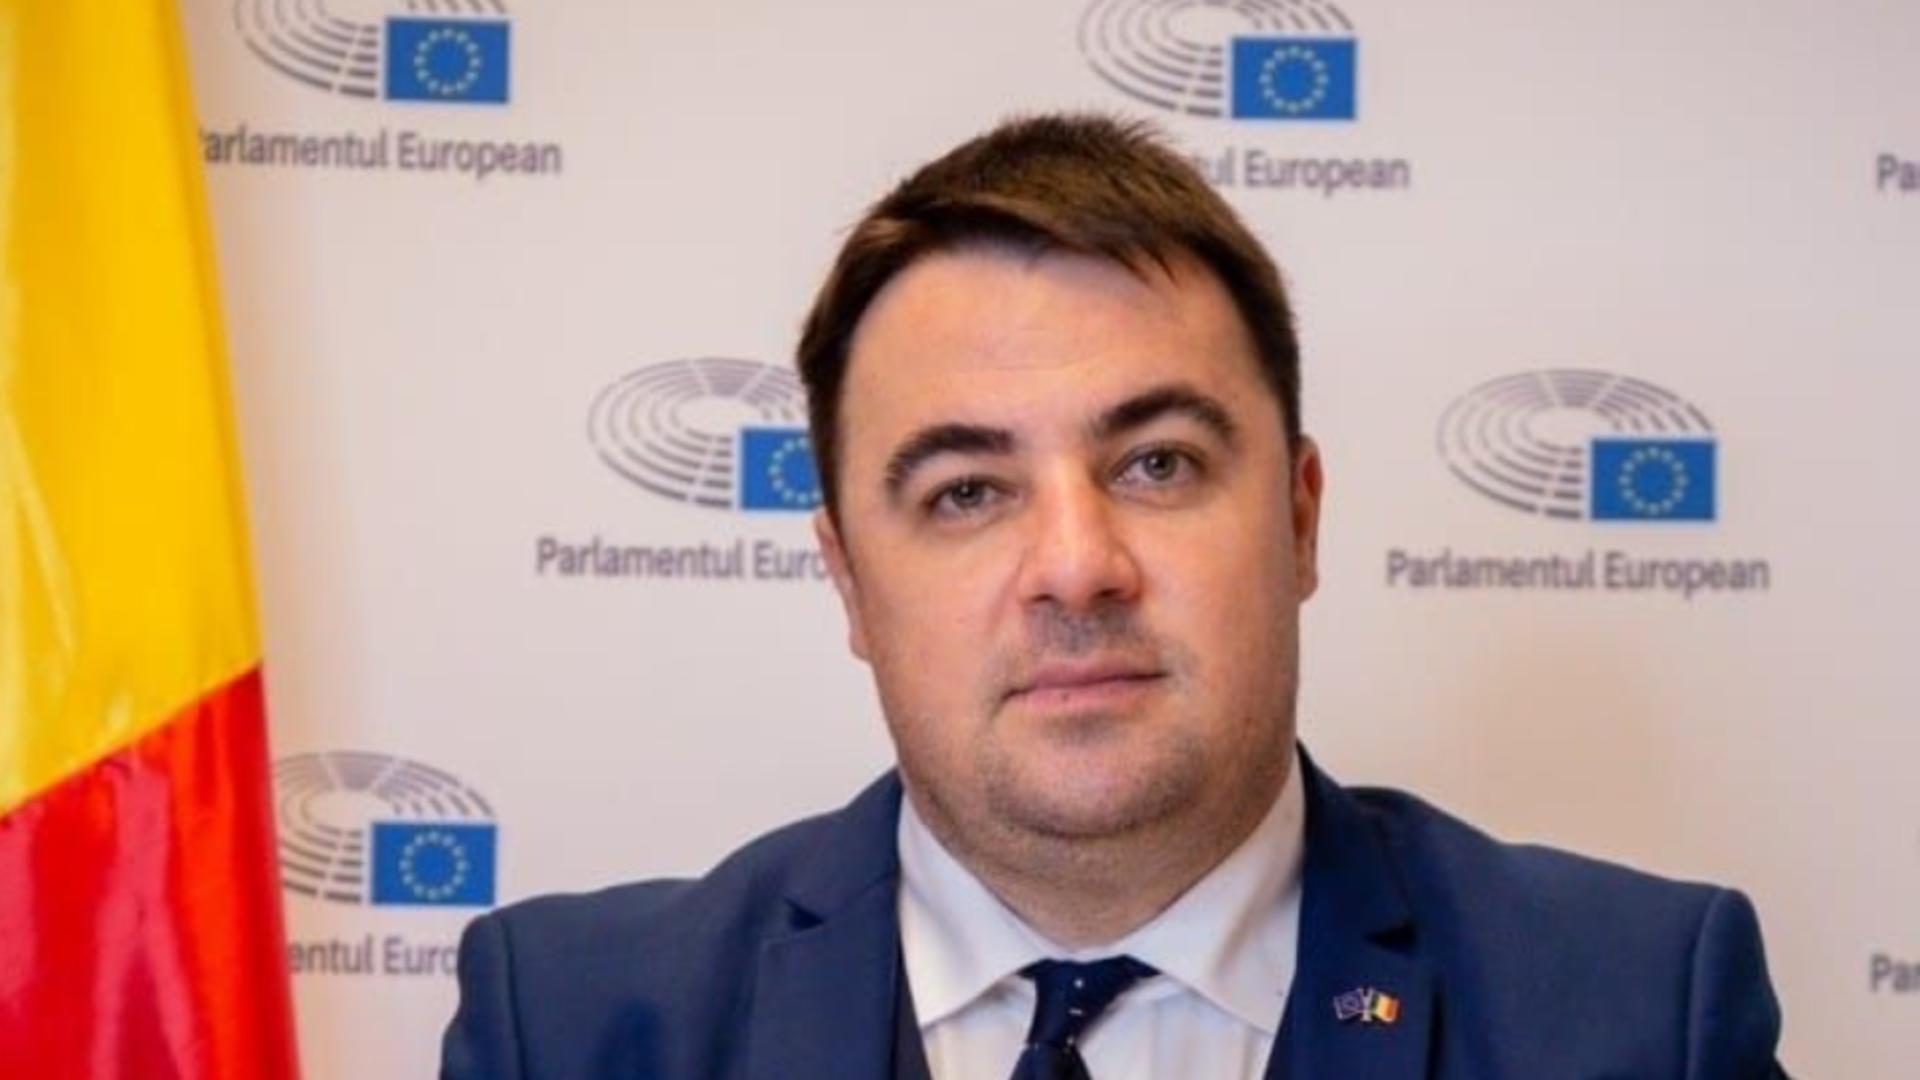 TU DECIZI. Dosar de candidat: Vlad Botoș, rezistul traseist care mai vrea un mandat de europarlamentar